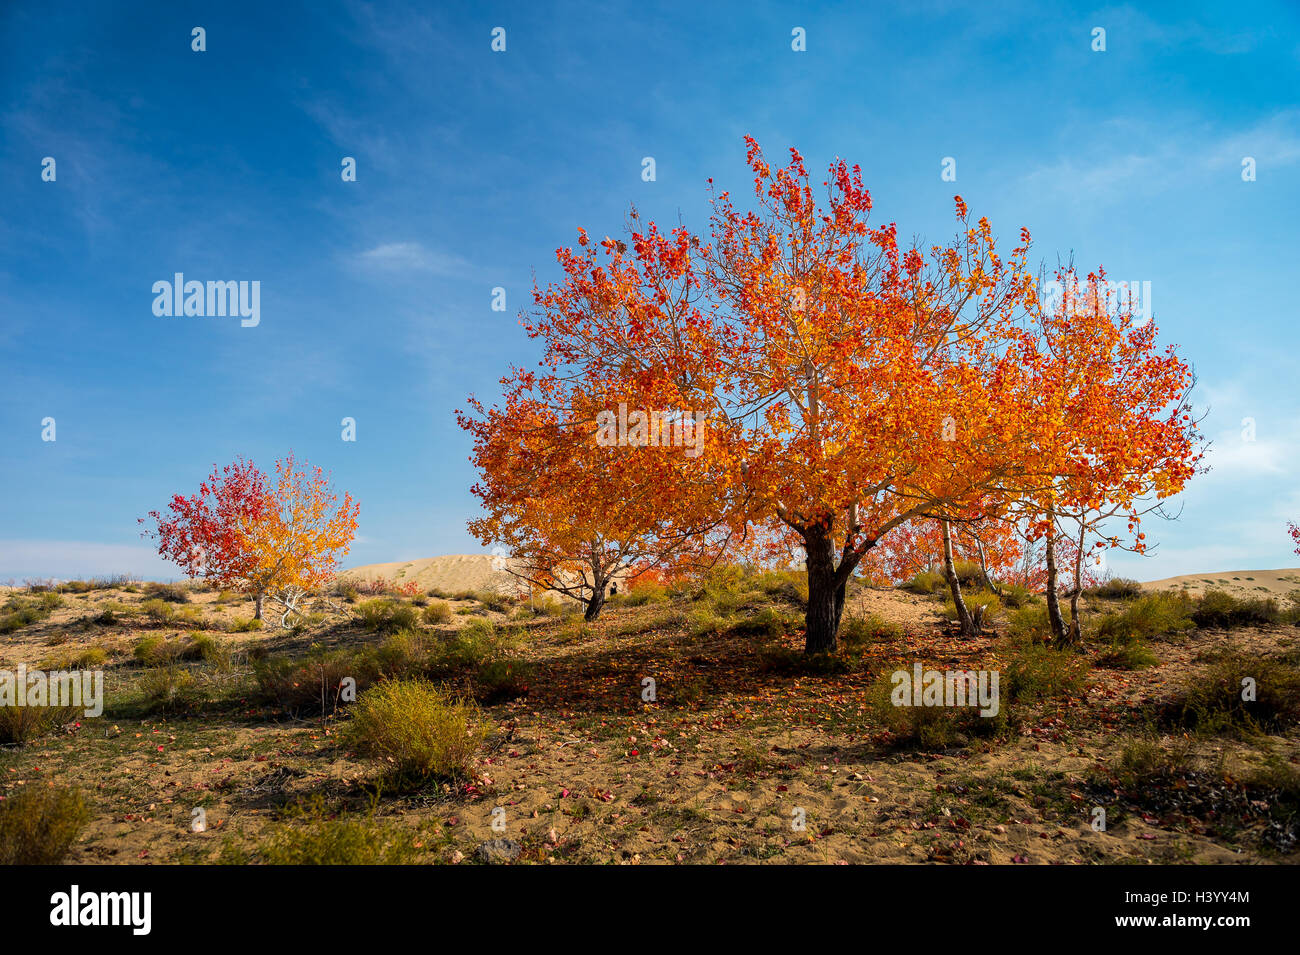 Autumn tree, Xinjiang, China Stock Photo